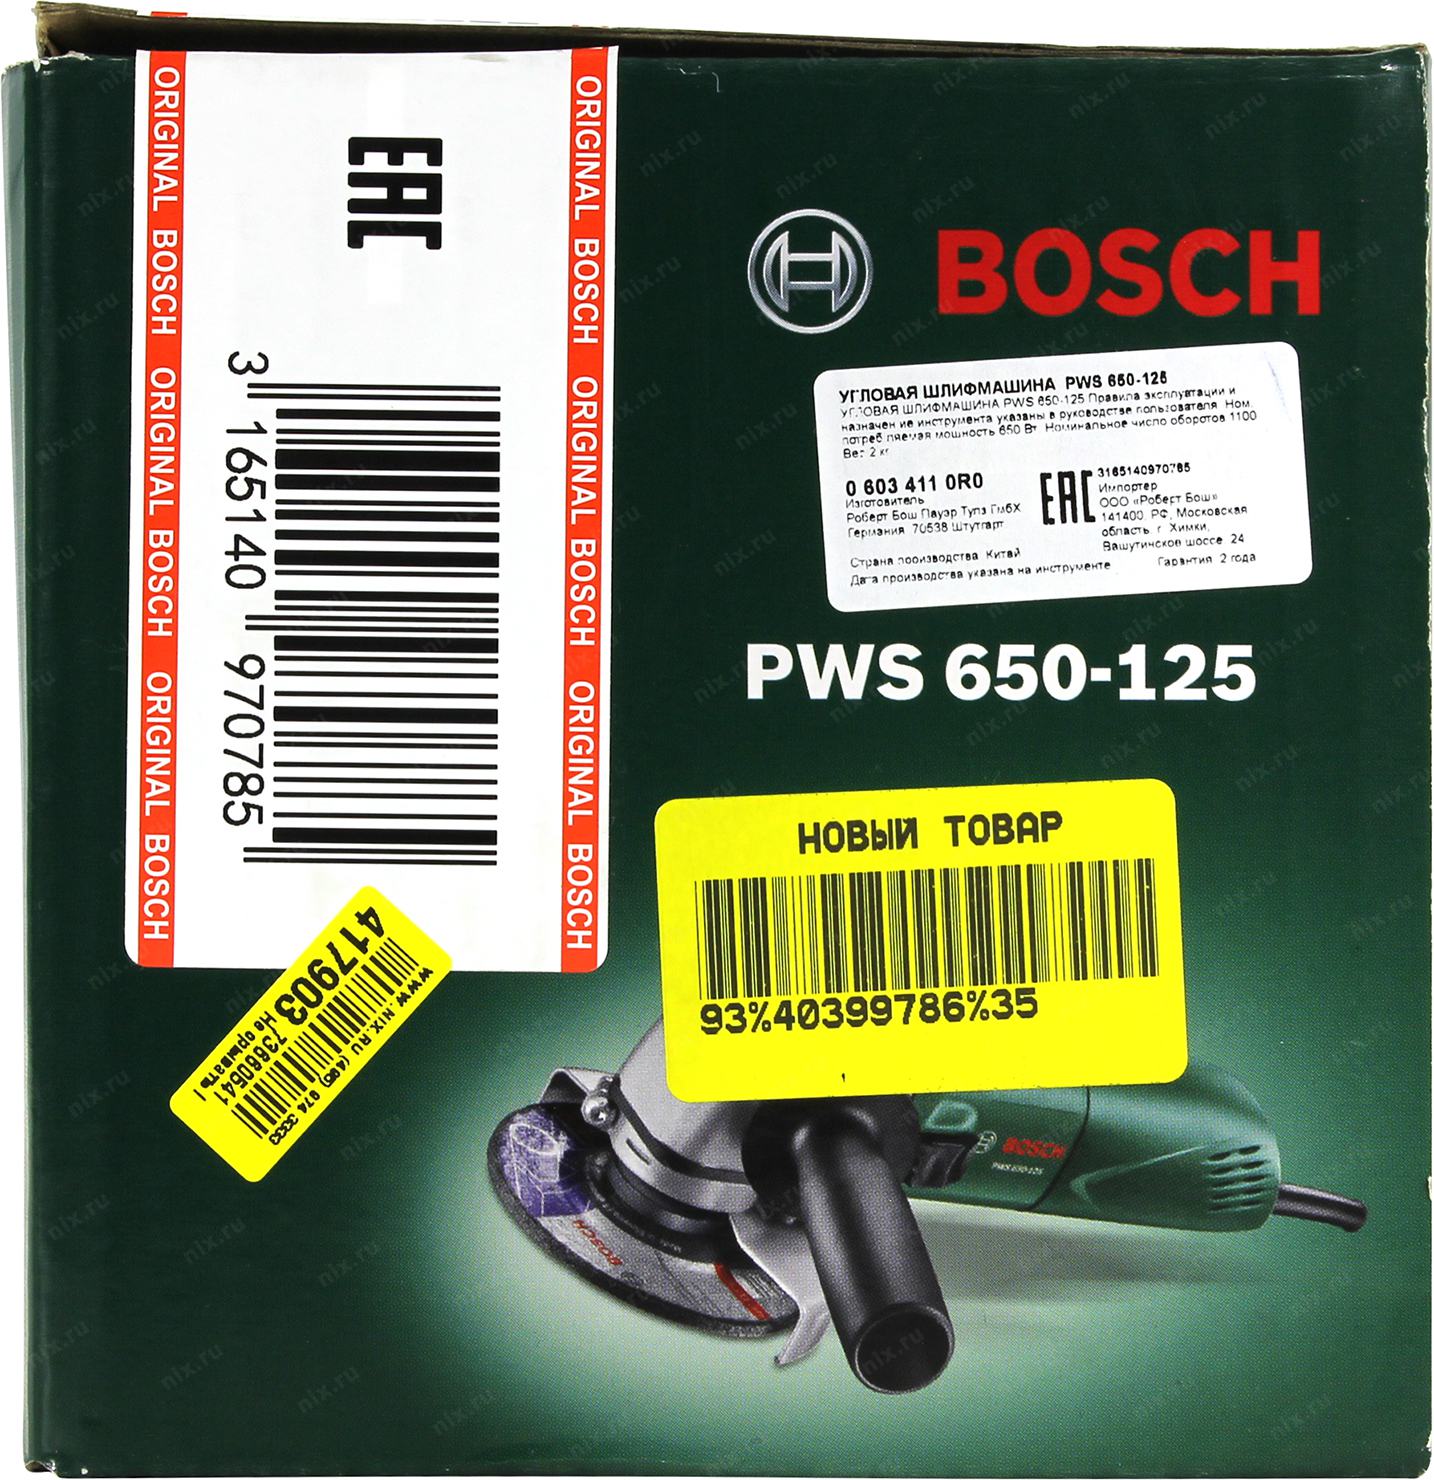 Bosch 650 125. Угловая шлифмашина PWS 650-125 06034110r0. Угловая шлифмашина PWS 650-125. Bosch PWS 650-125 (06034110r0), 650 Вт, 125 мм. Ключ для шлифмашинки PWS 650-125.